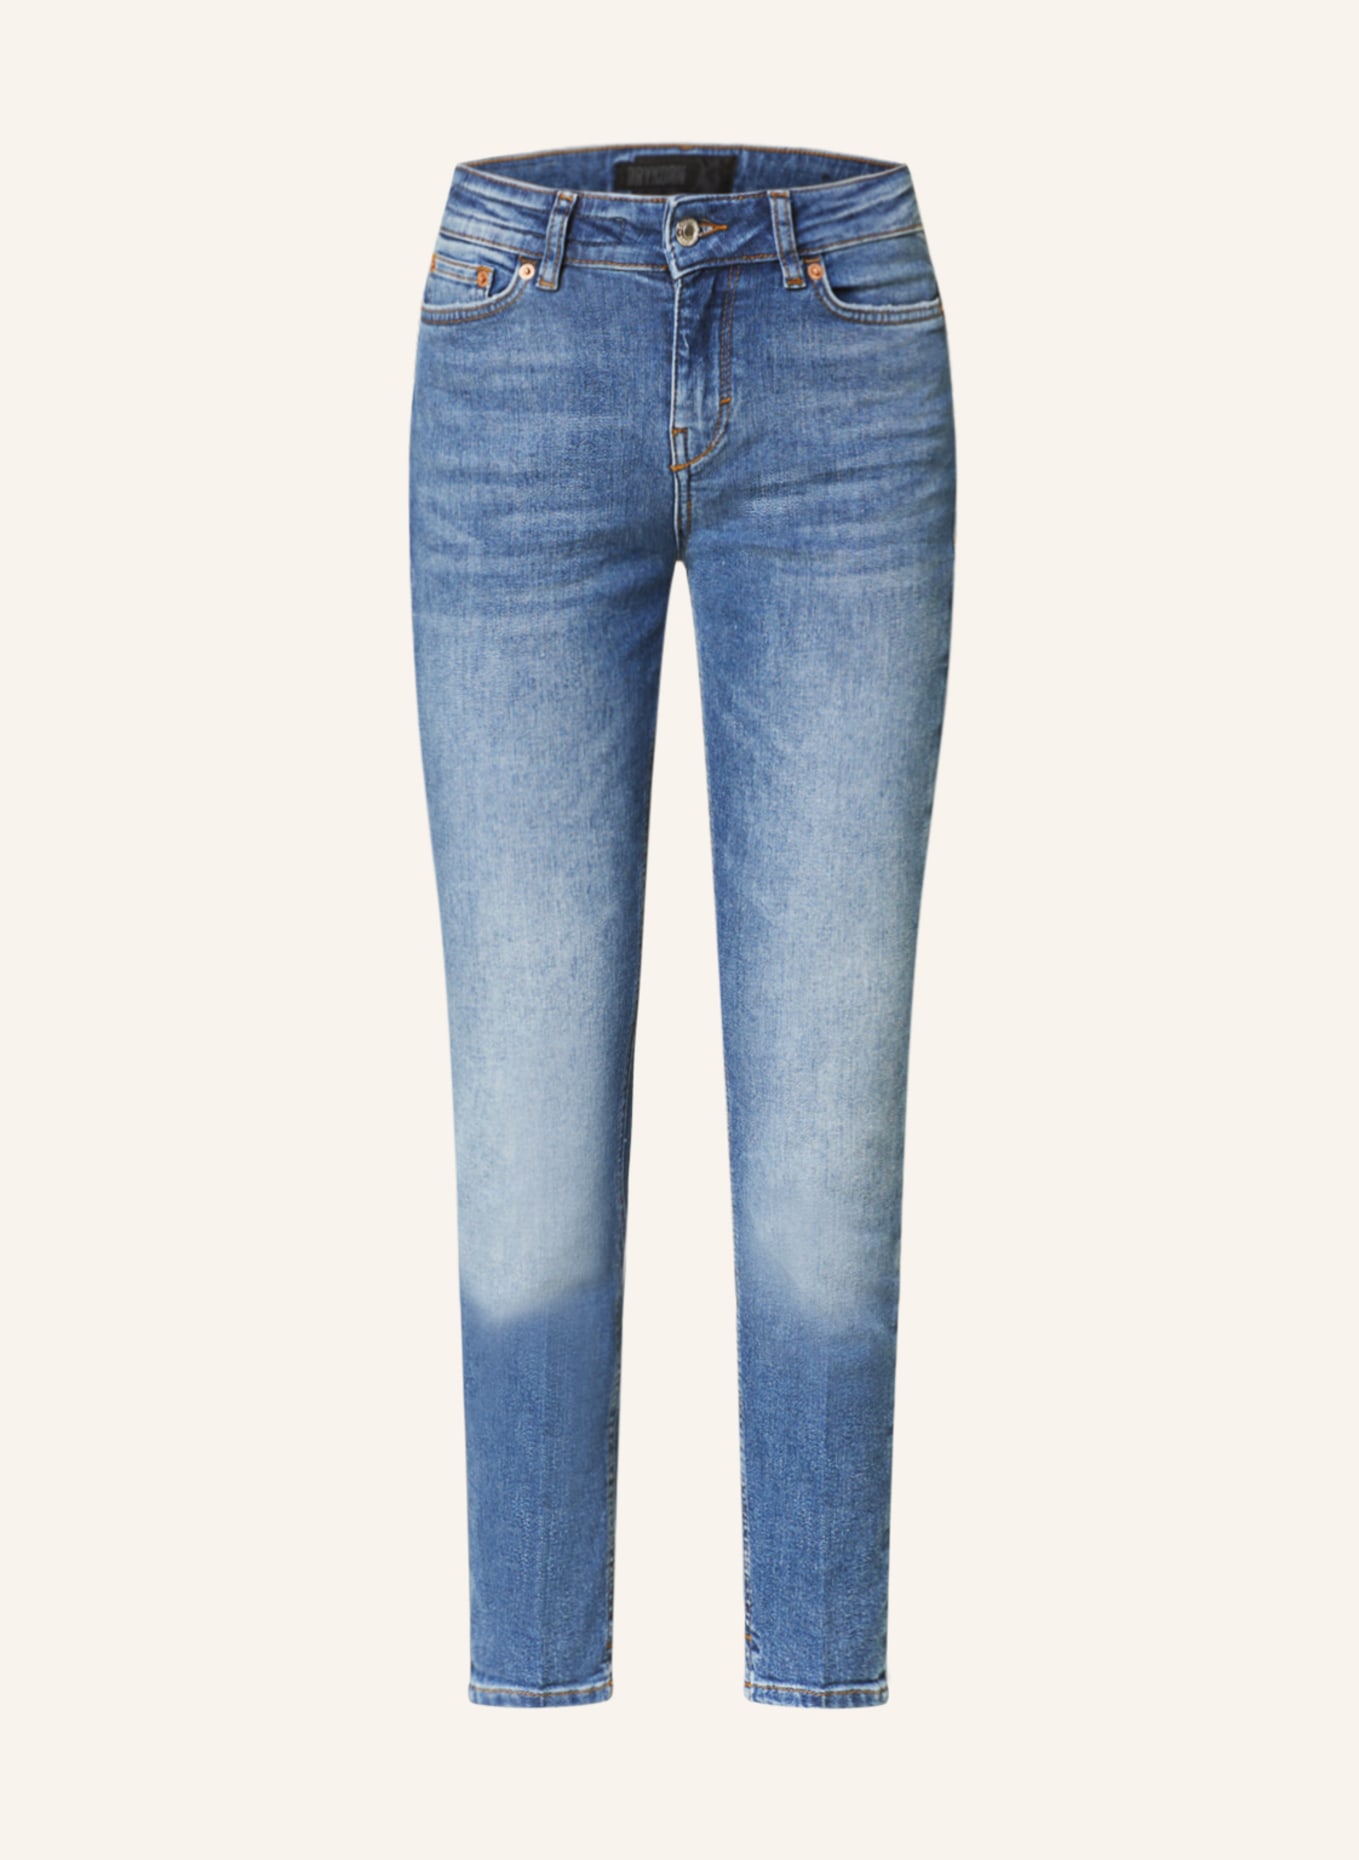 DRYKORN Skinny Jeans NEED, Farbe: 3600 blau (Bild 1)